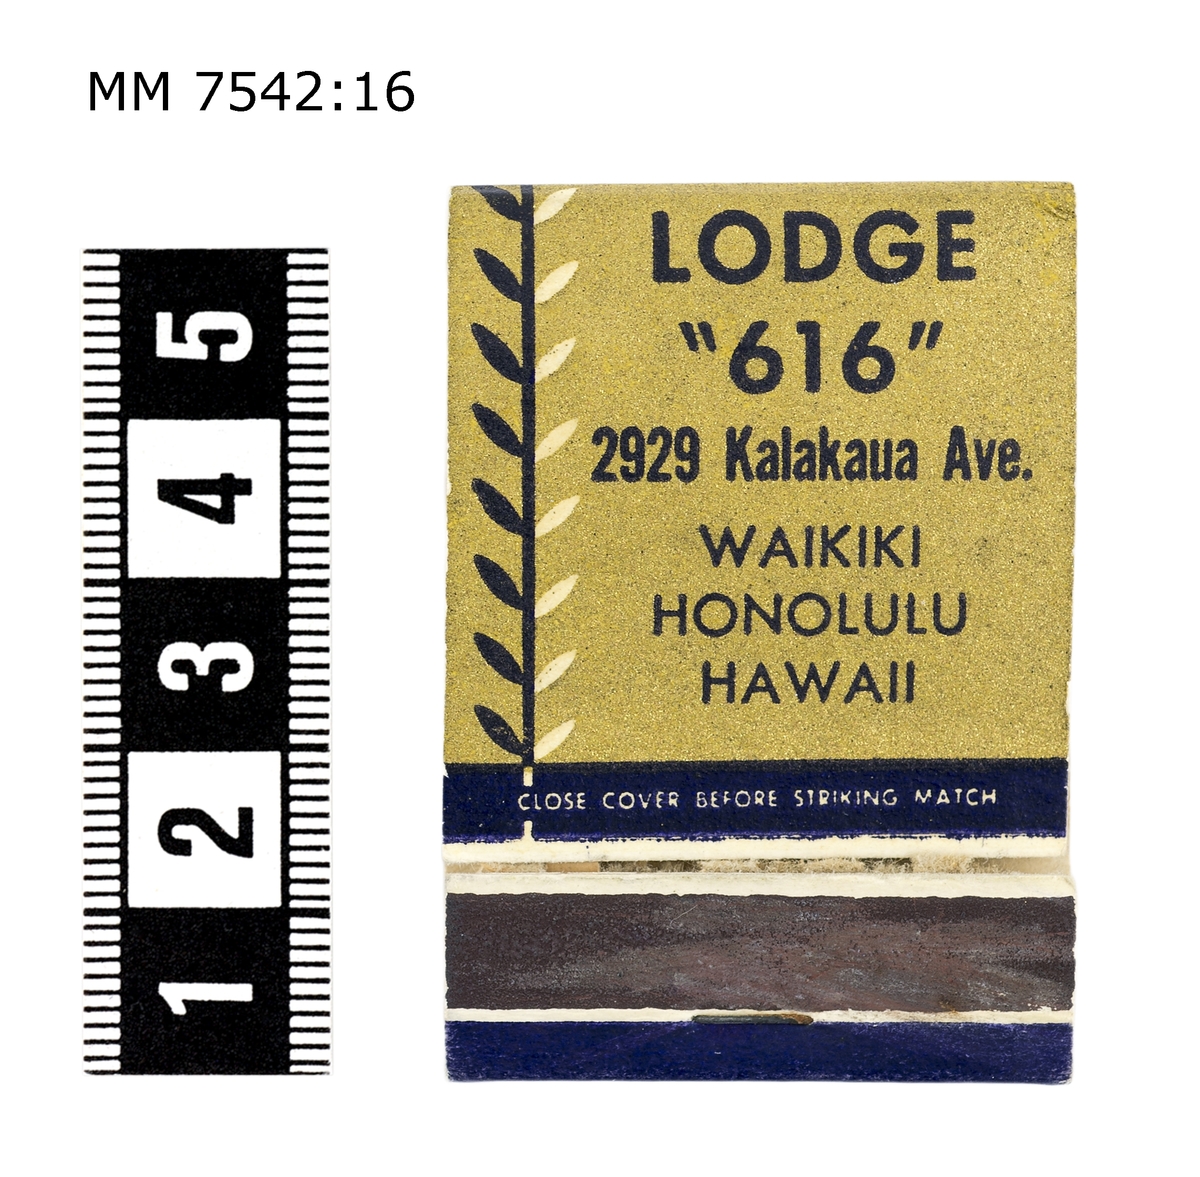 Tändsticksplån från ett motel i Honolulu. Hawaii.